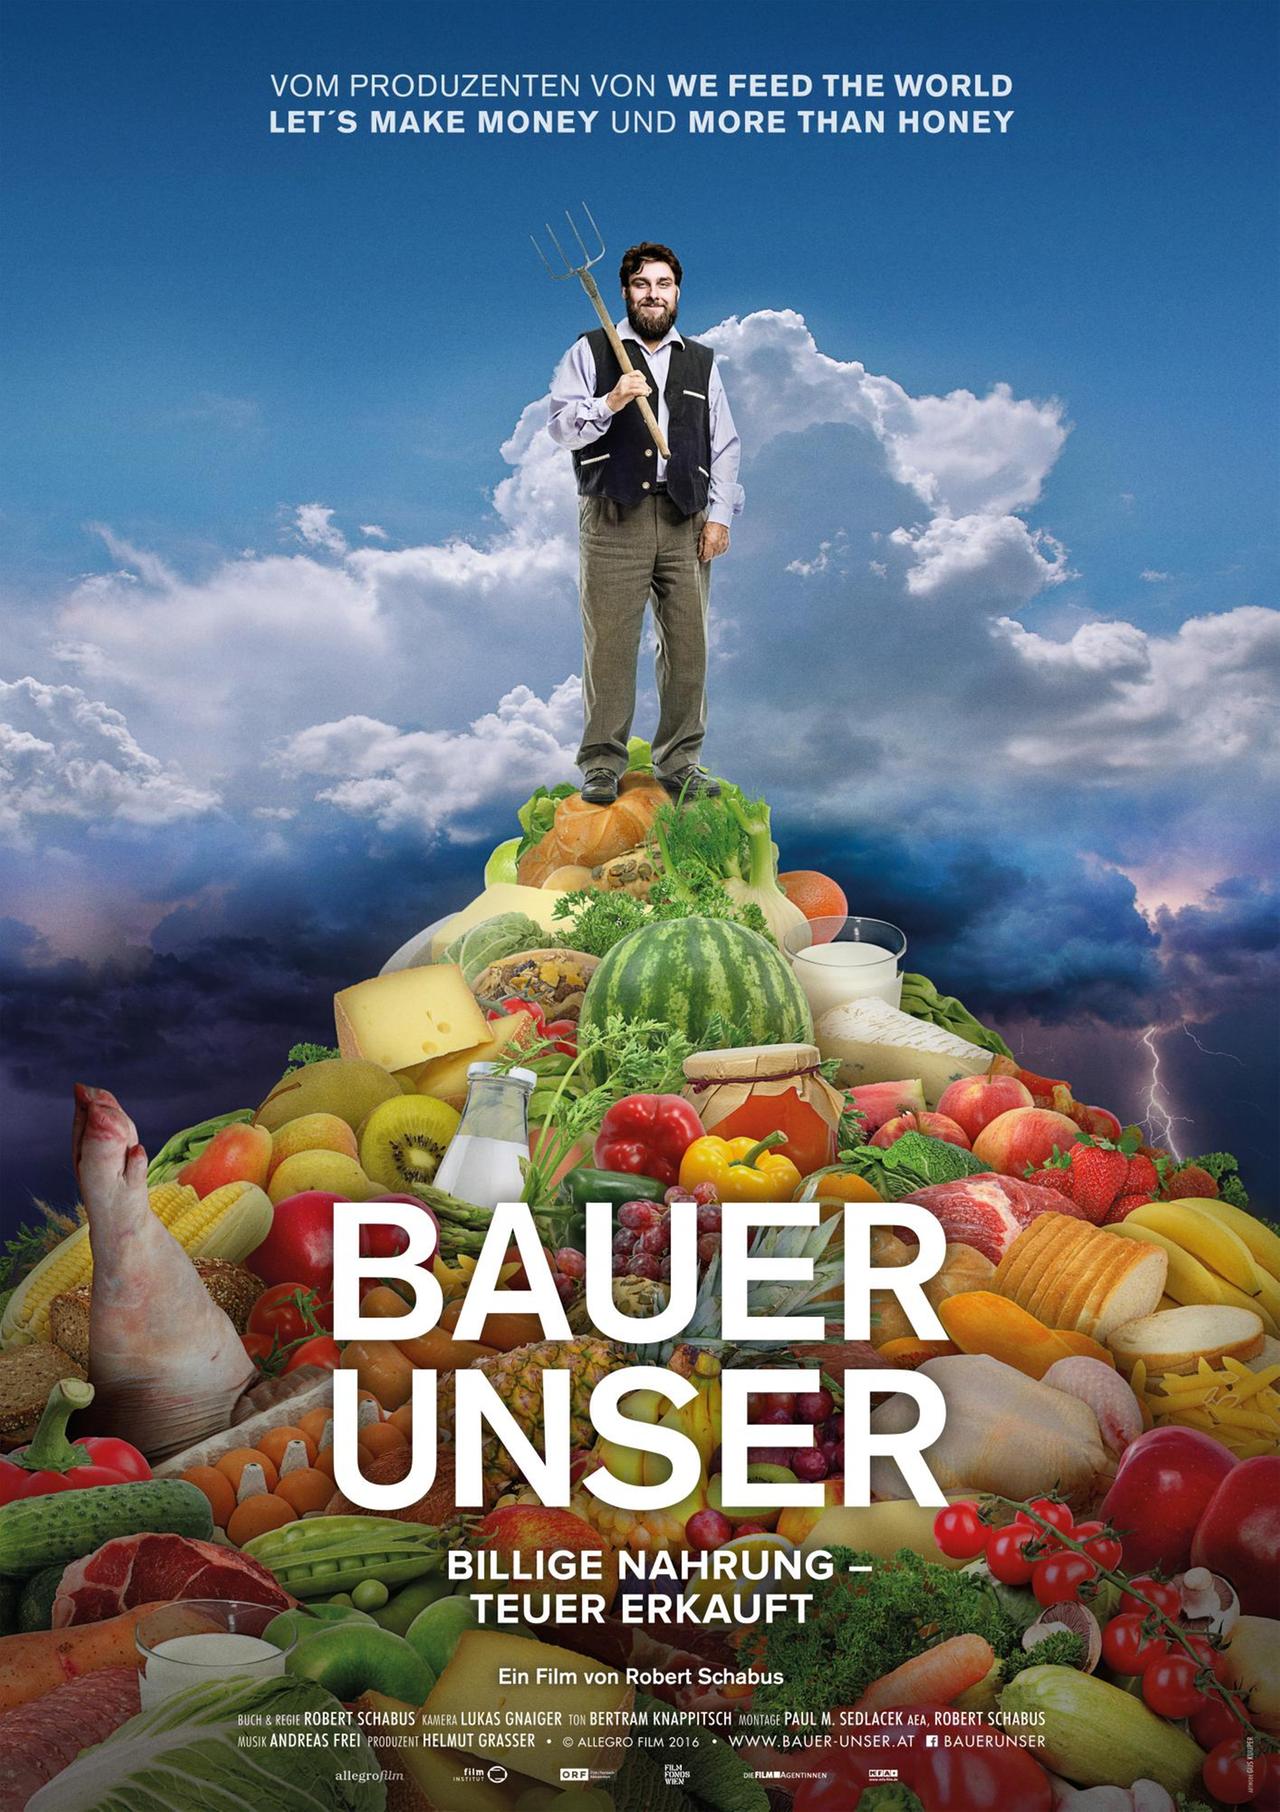 Filmplakat zu "Bauer unser".